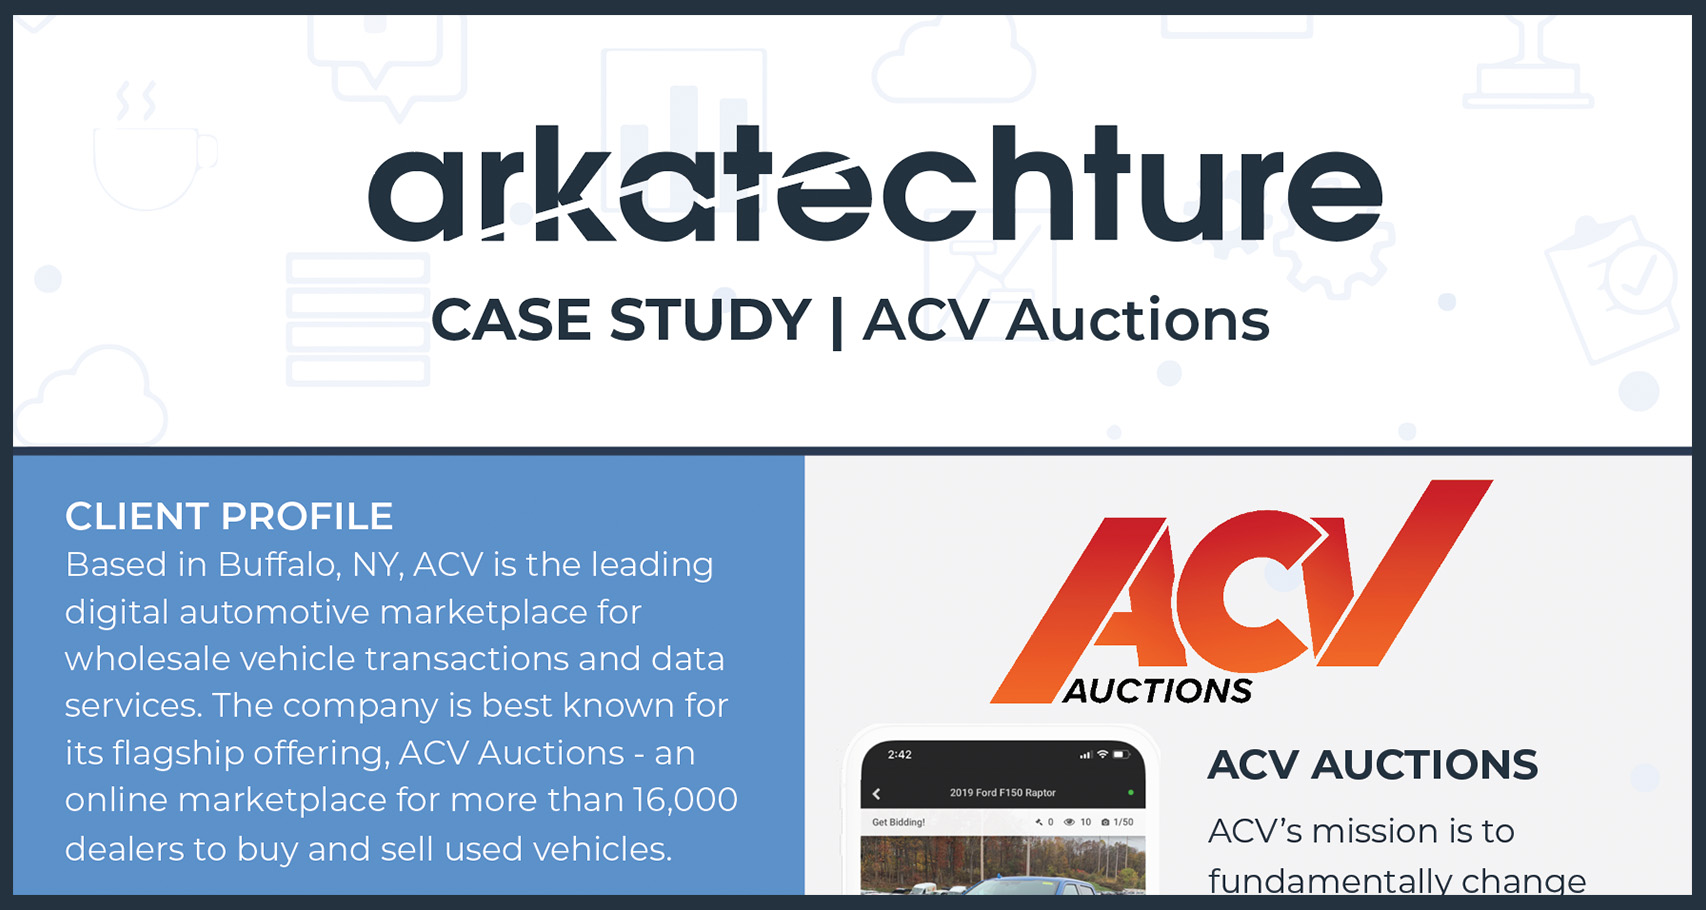 ACV Auctions Tableau Case Study